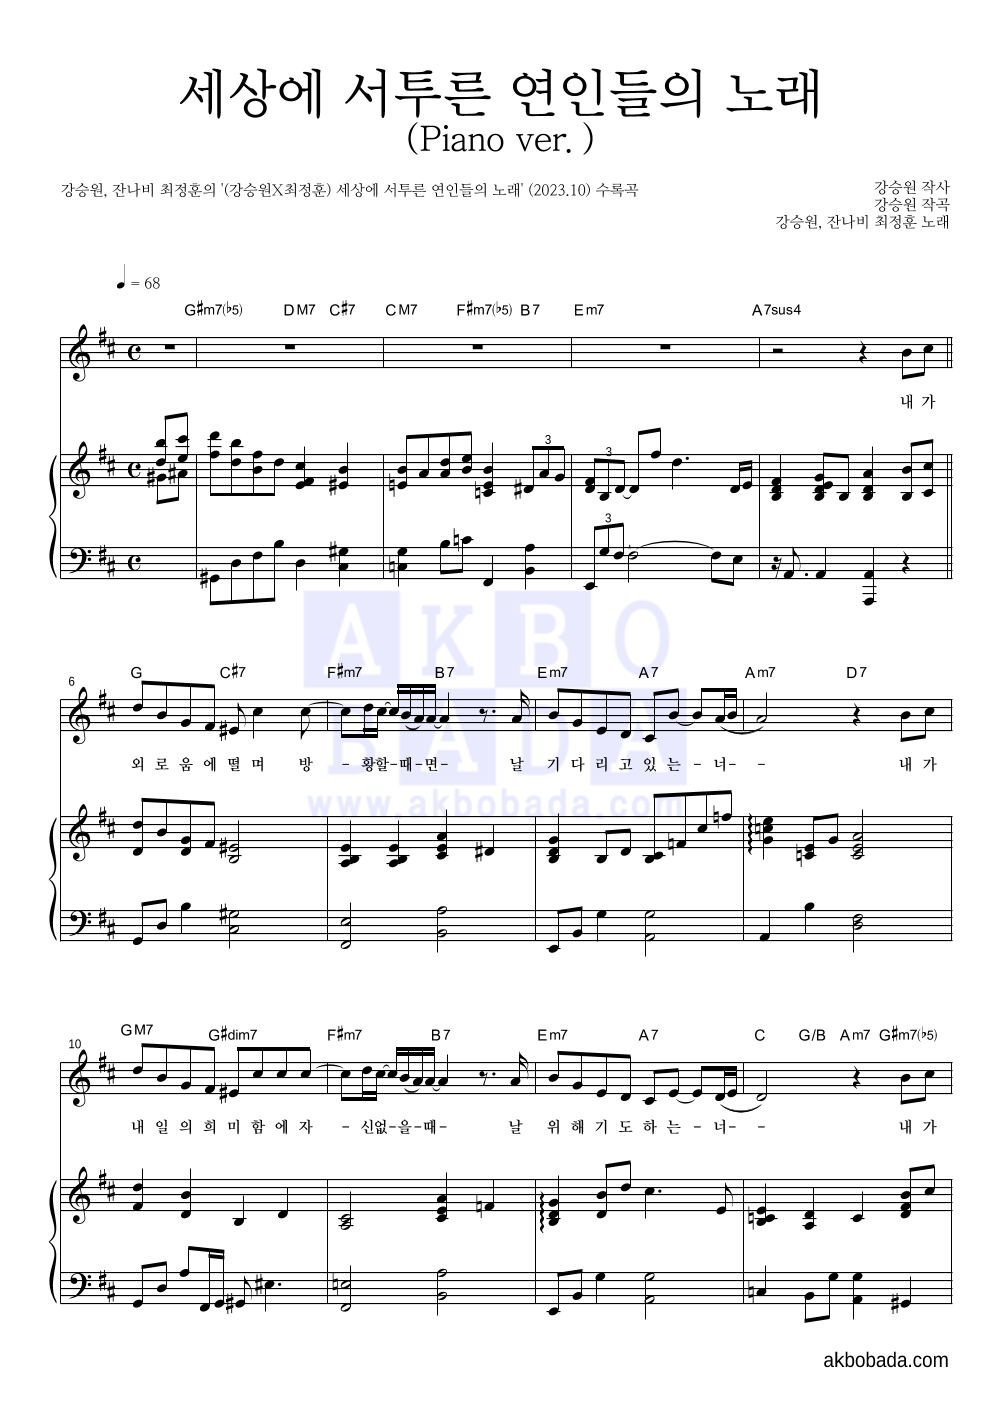 강승원,최정훈 - 세상에 서투른 연인들의 노래(Piano ver.) 피아노 3단 악보 